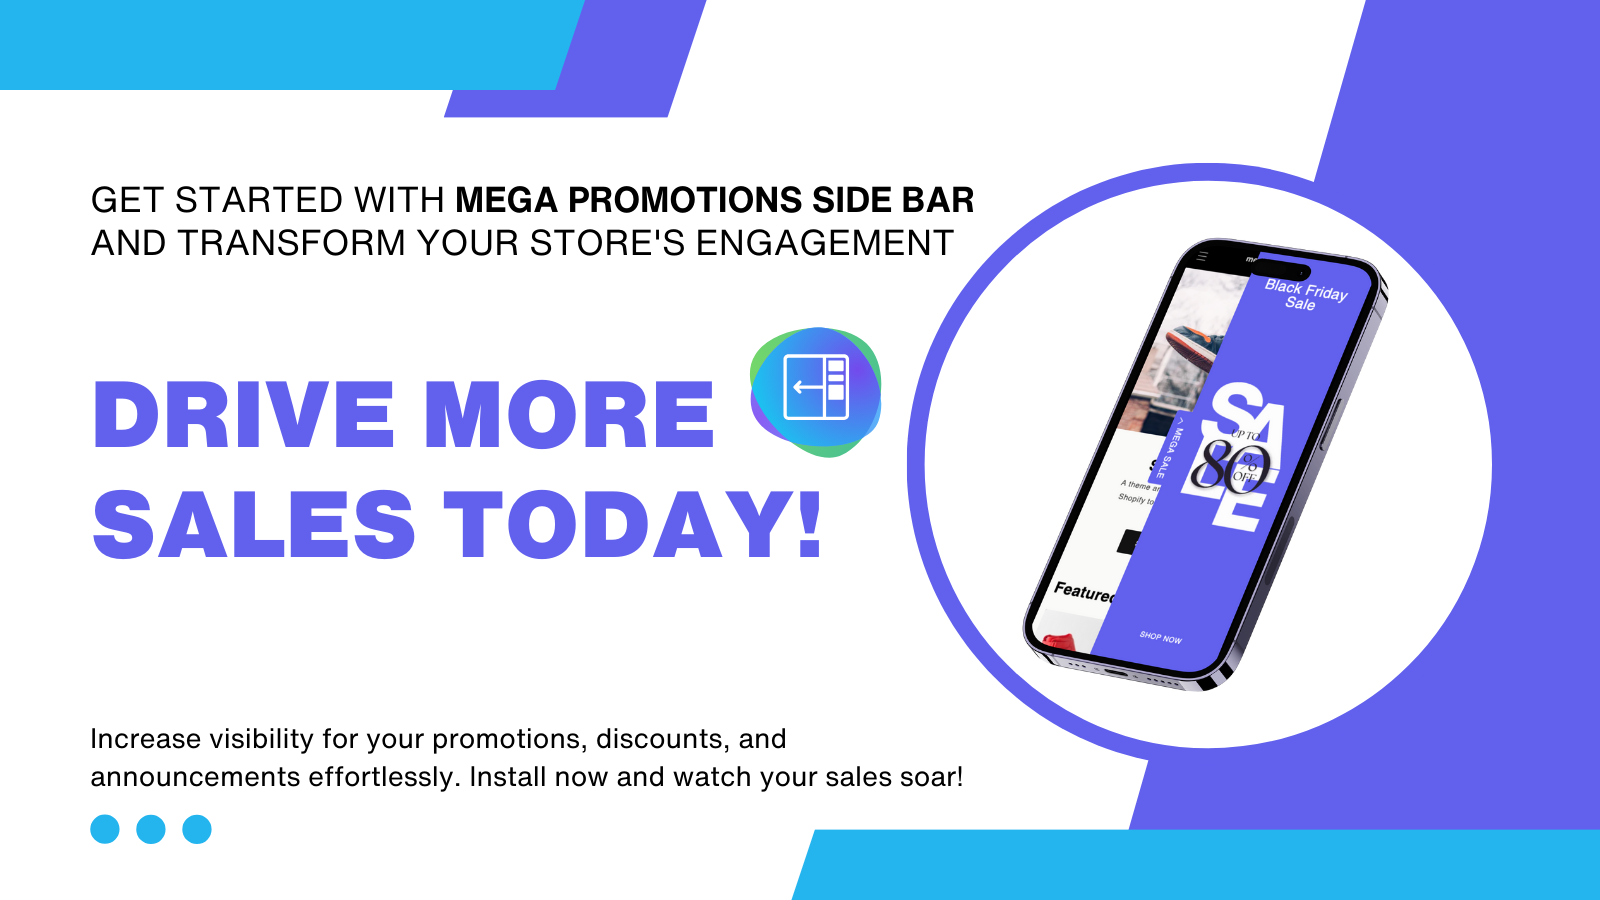 Mega Promotions Side Bar - Meer verkopen naar uw winkel drijven